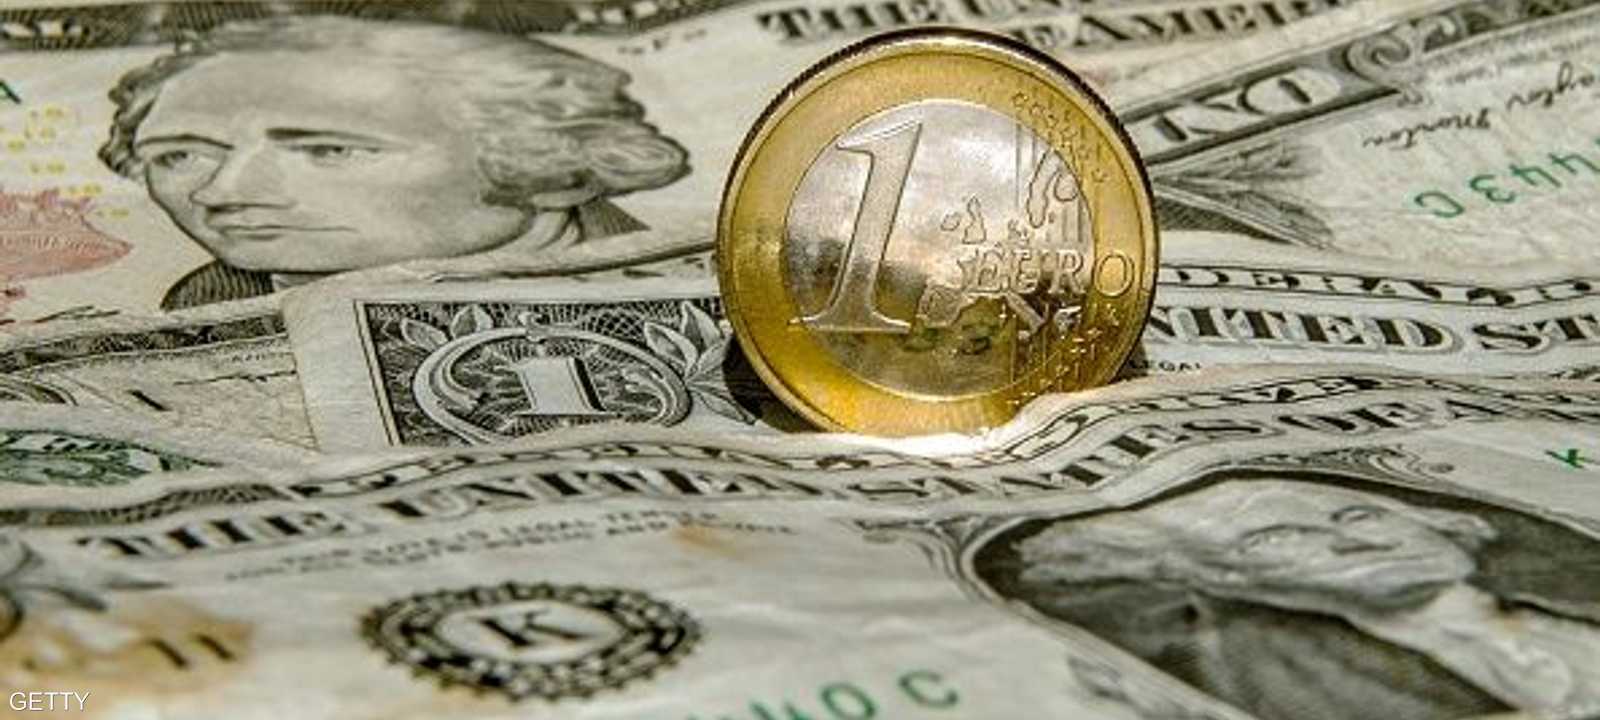 يواصل الدولار الارتفاع في سعر صرفه مقابل اليورو